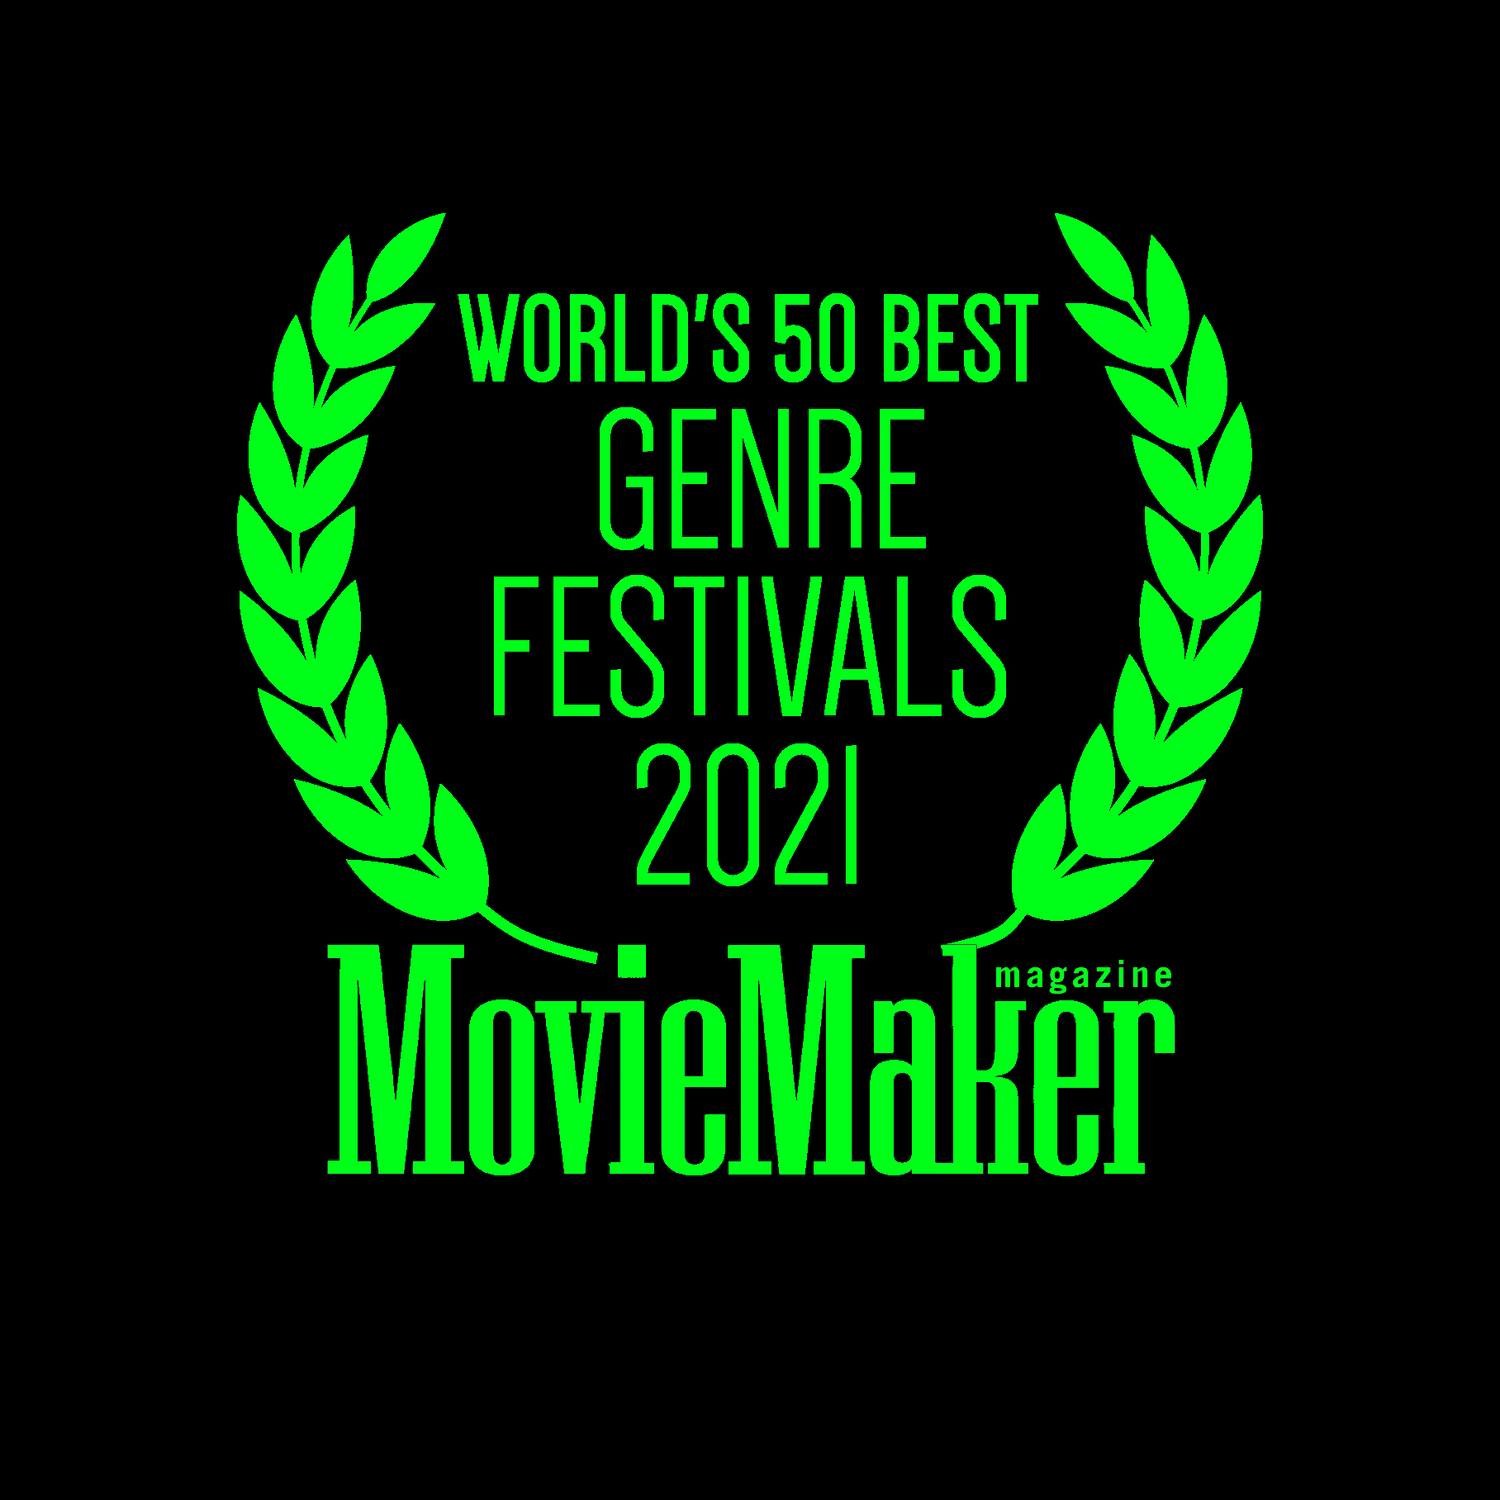 Screamfest 2021 - Worlds 50 Best Genre Festivals 2021 - Movie Maker Magazine - green logo